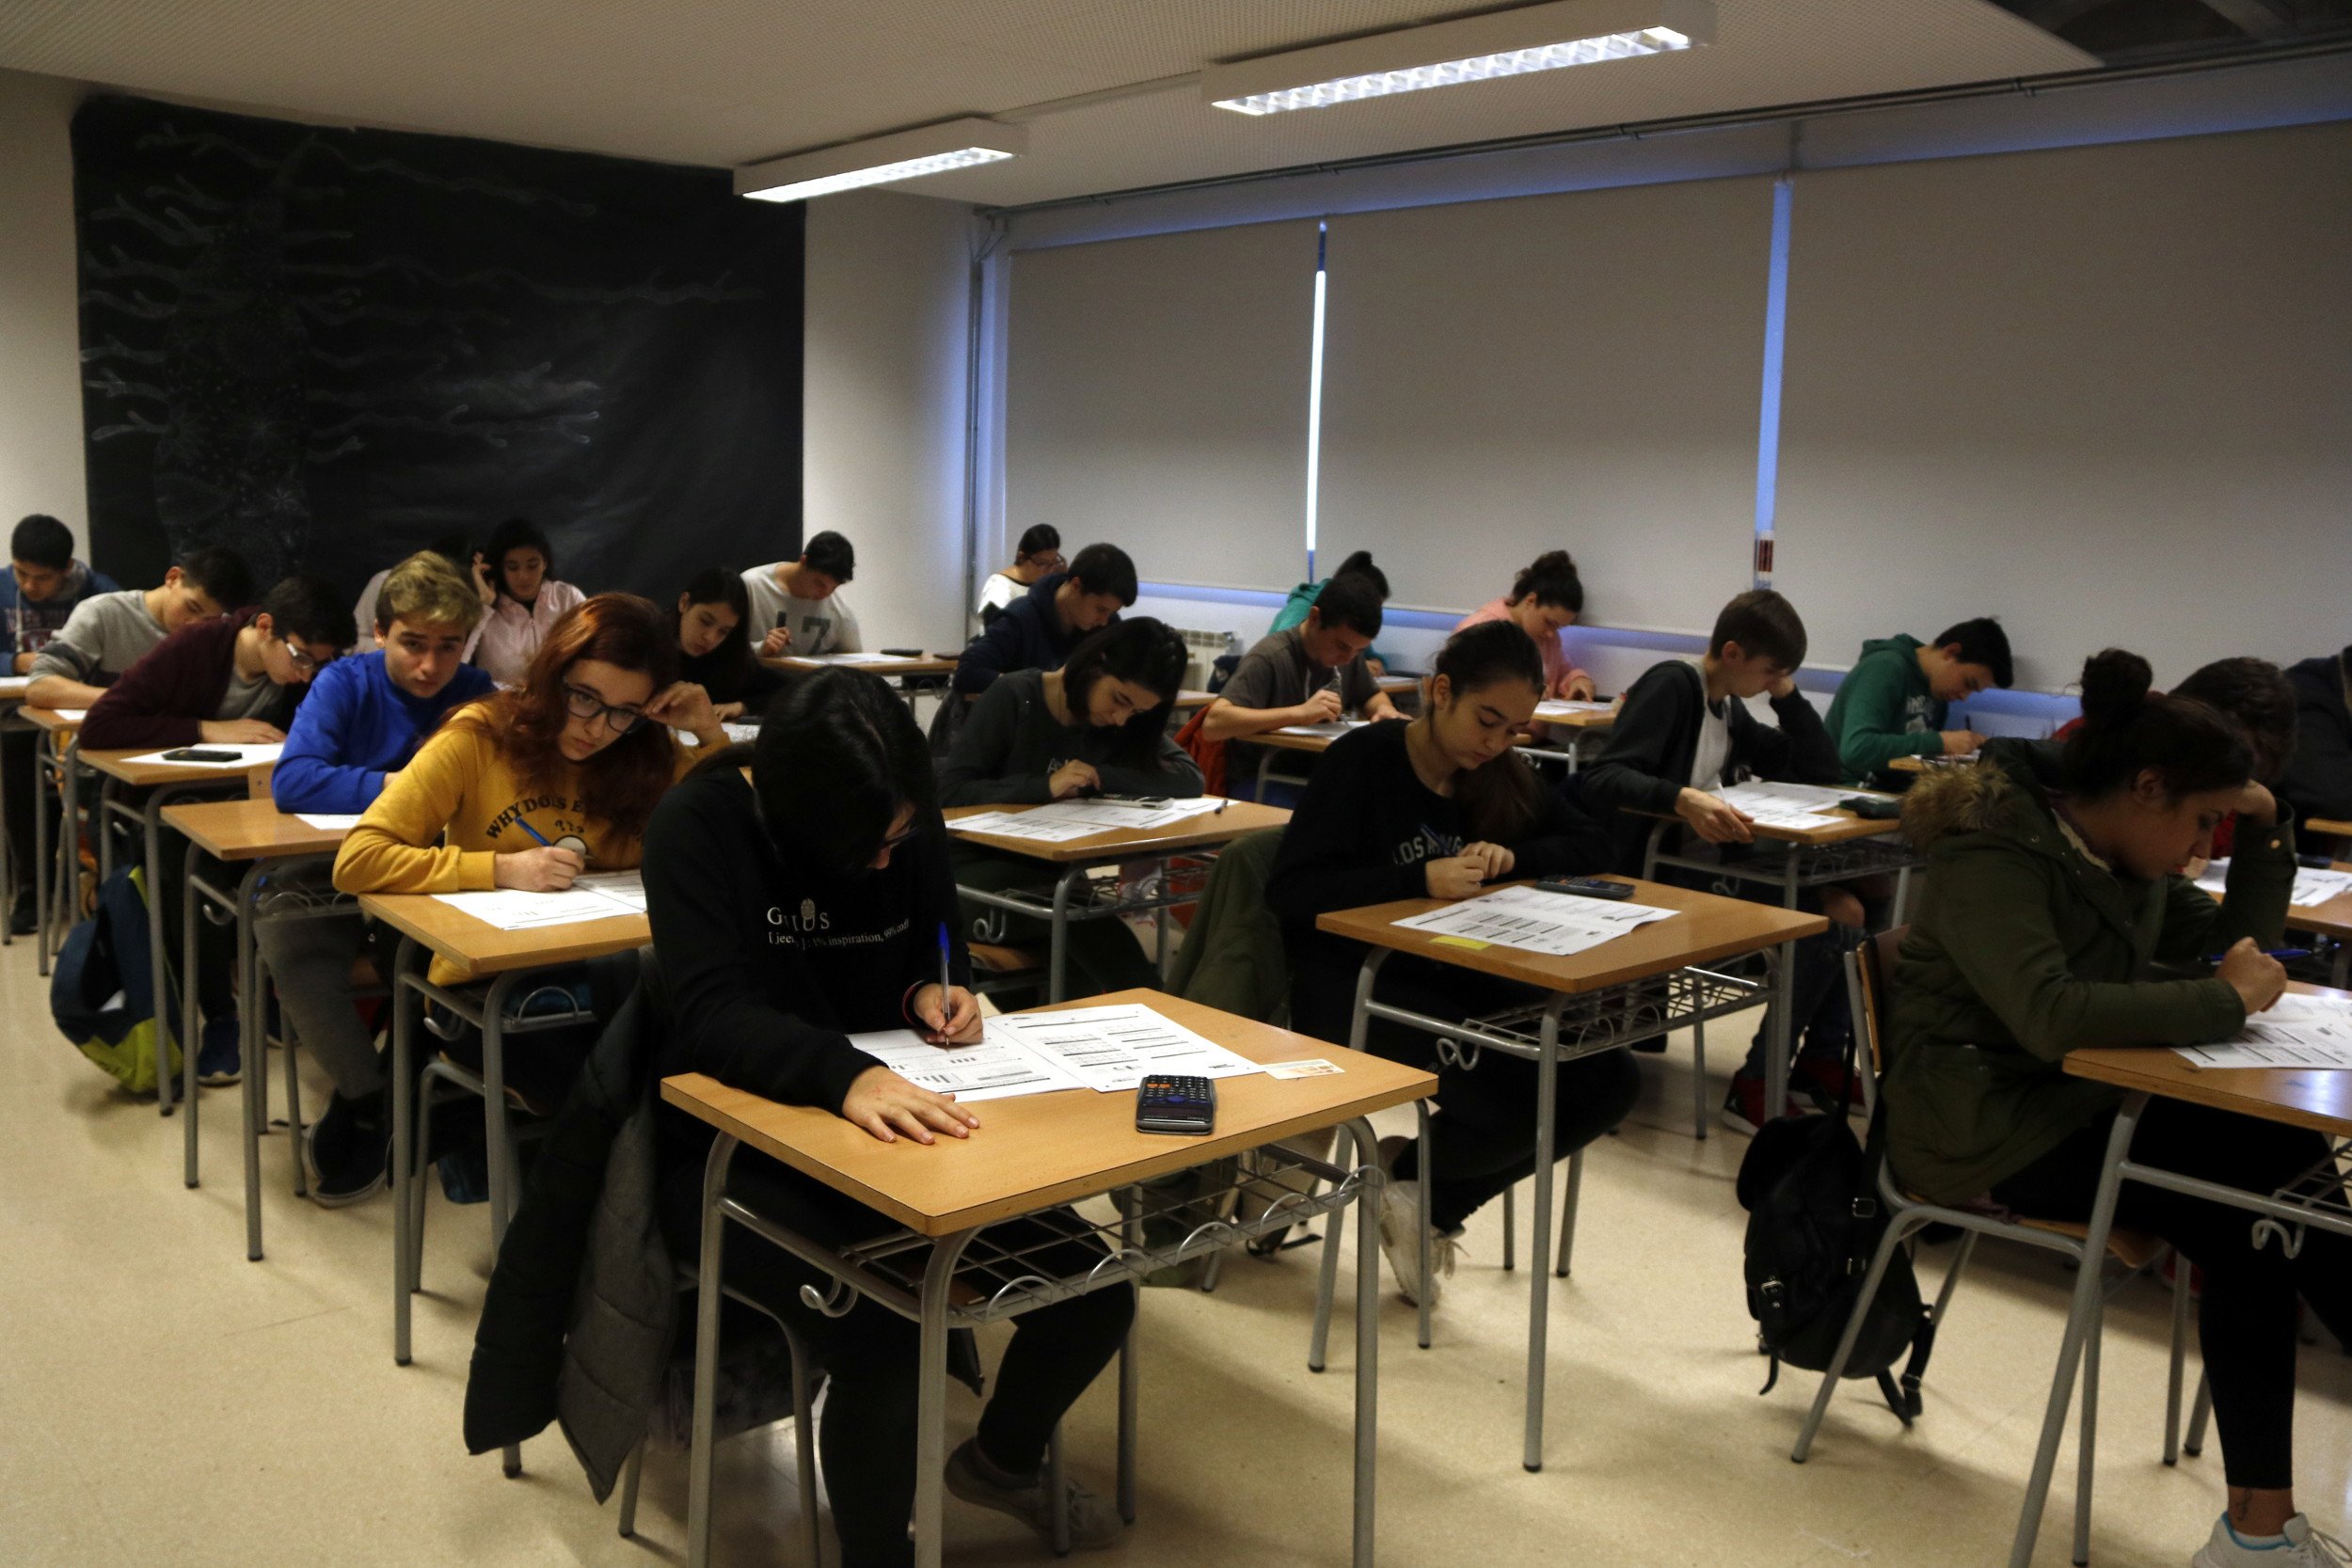 Un sindicato minoritario denuncia adoctrinamiento "intenso" en aulas catalanas